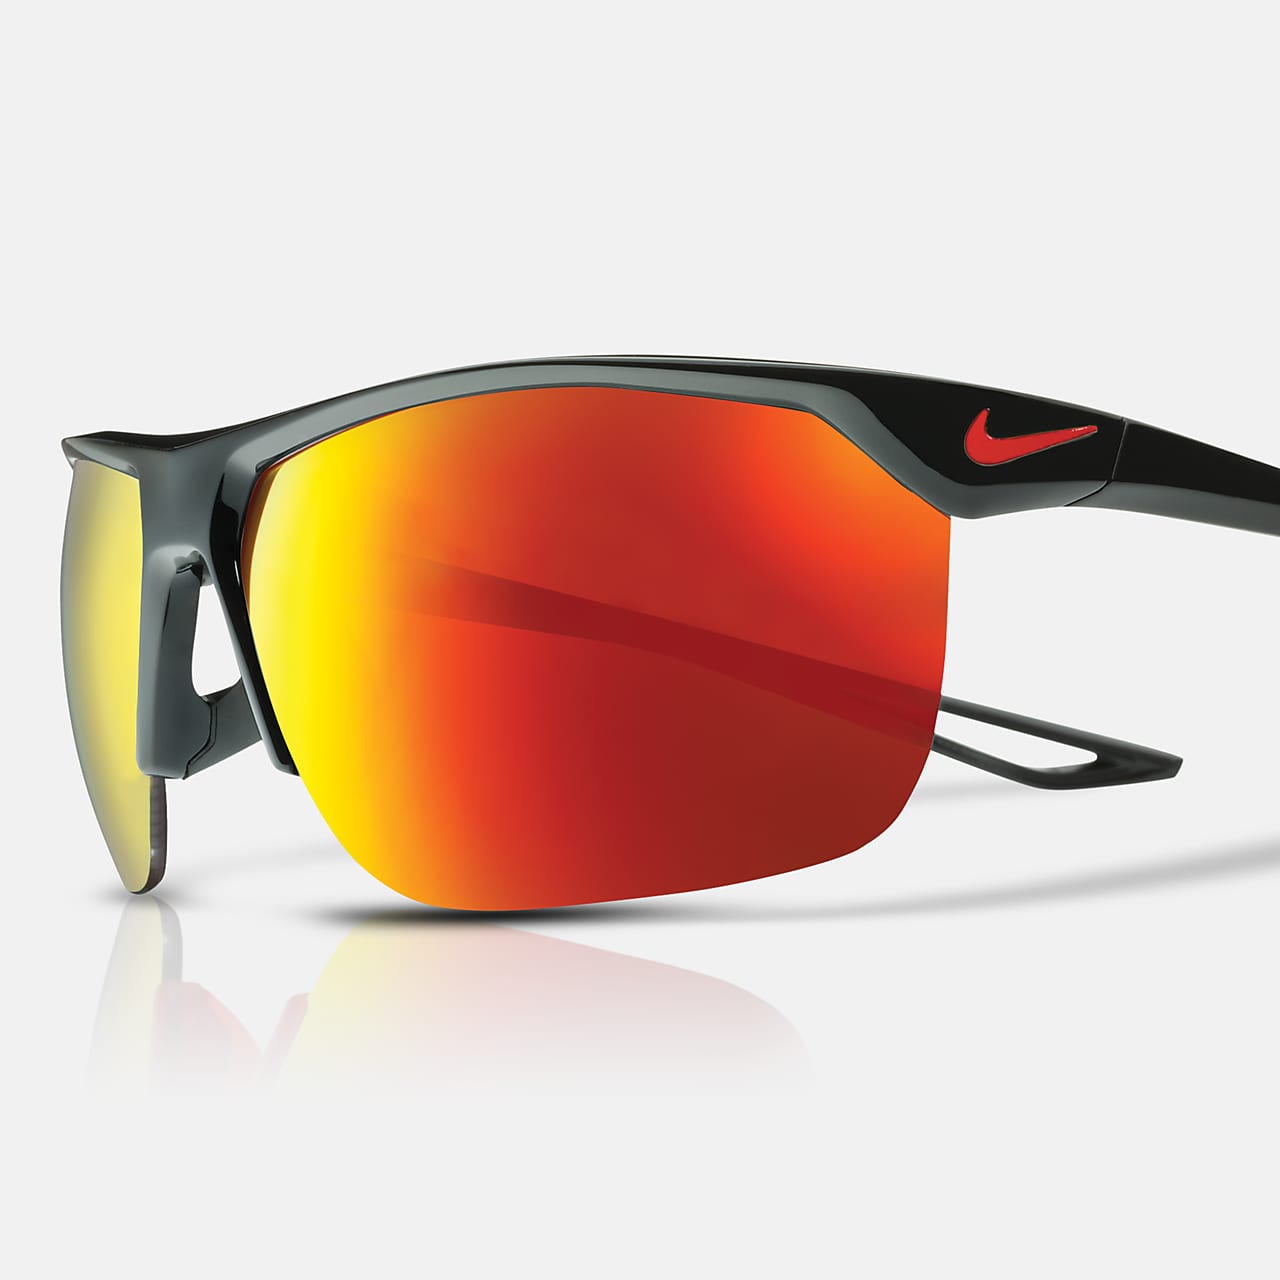 Nike Trainer Mirrored Sunglasses